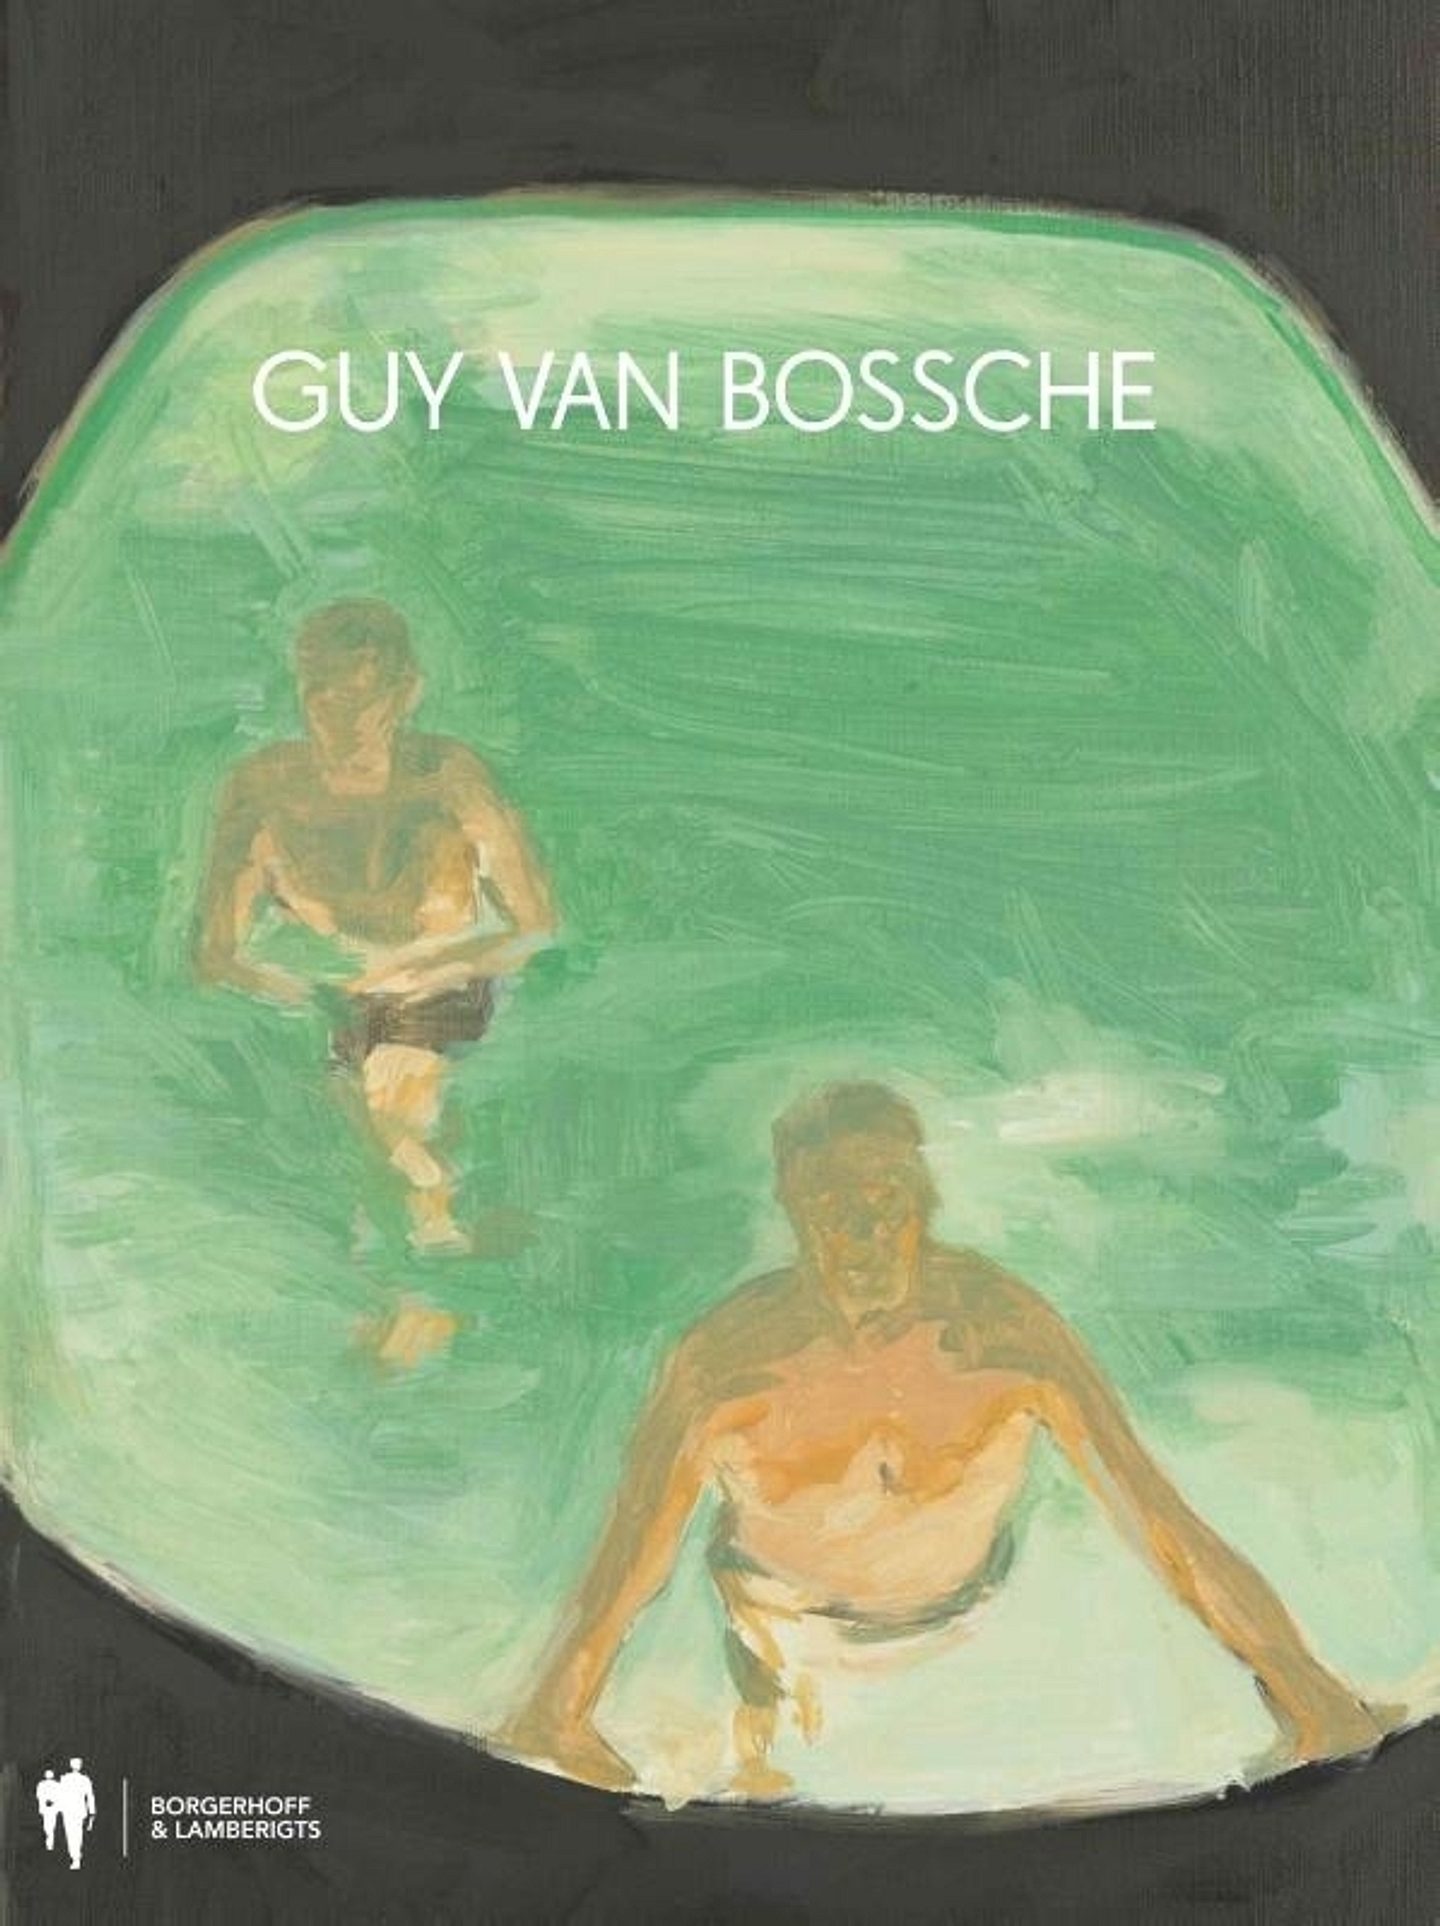 Guy van Bossche